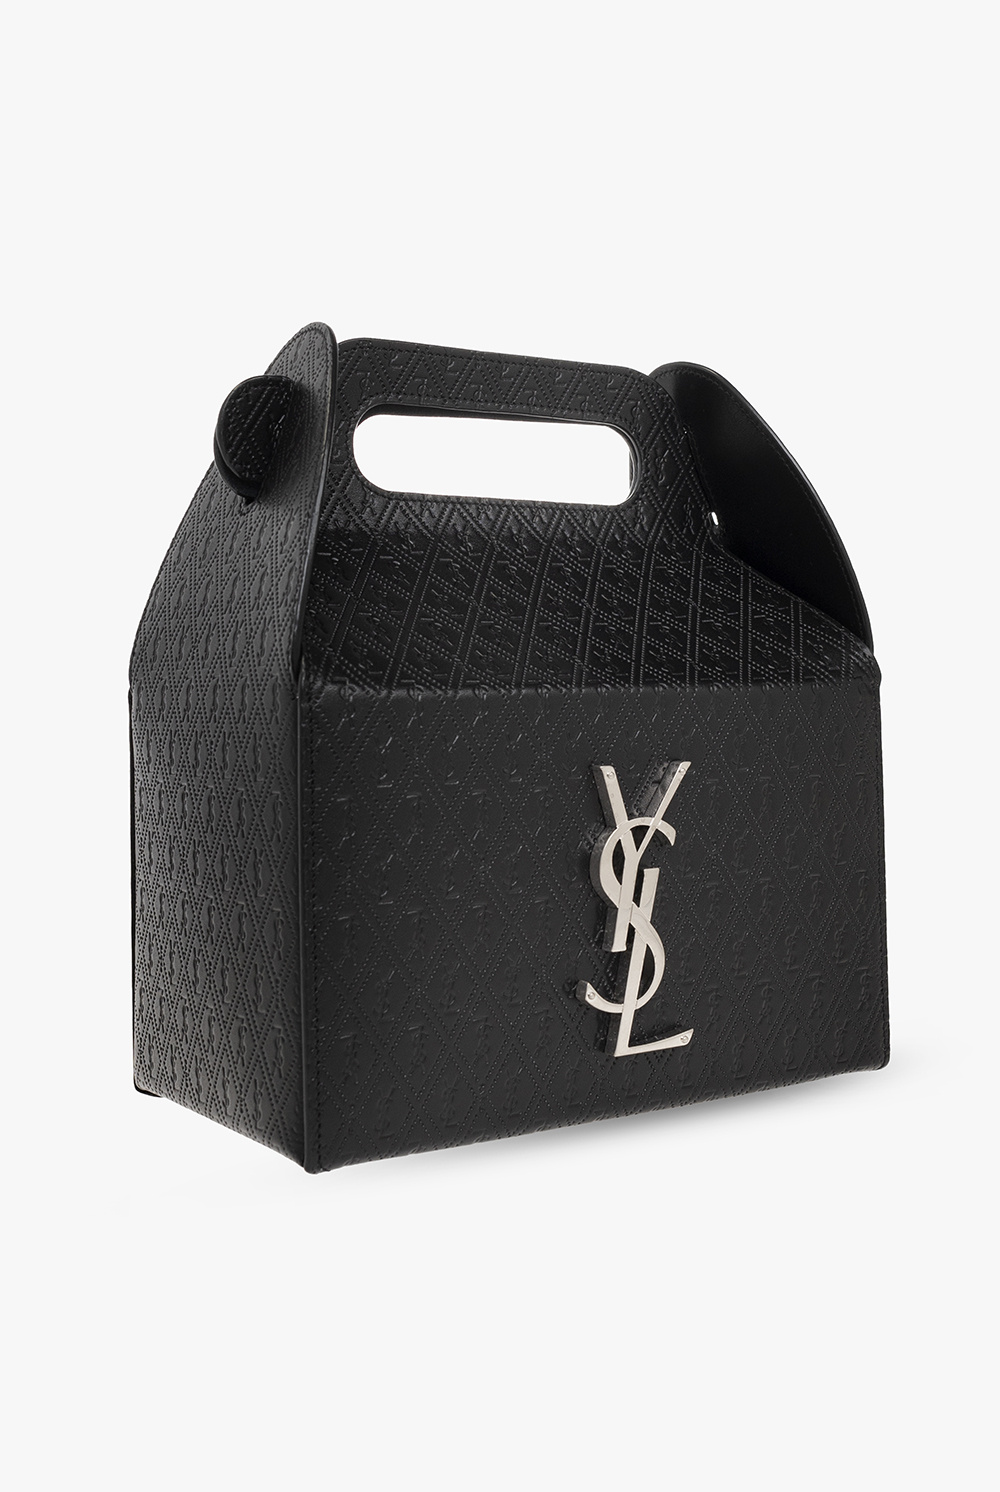 Yves Saint Laurent, Black velvet mini Mombasa bag with silver handle. -  Unique Designer Pieces